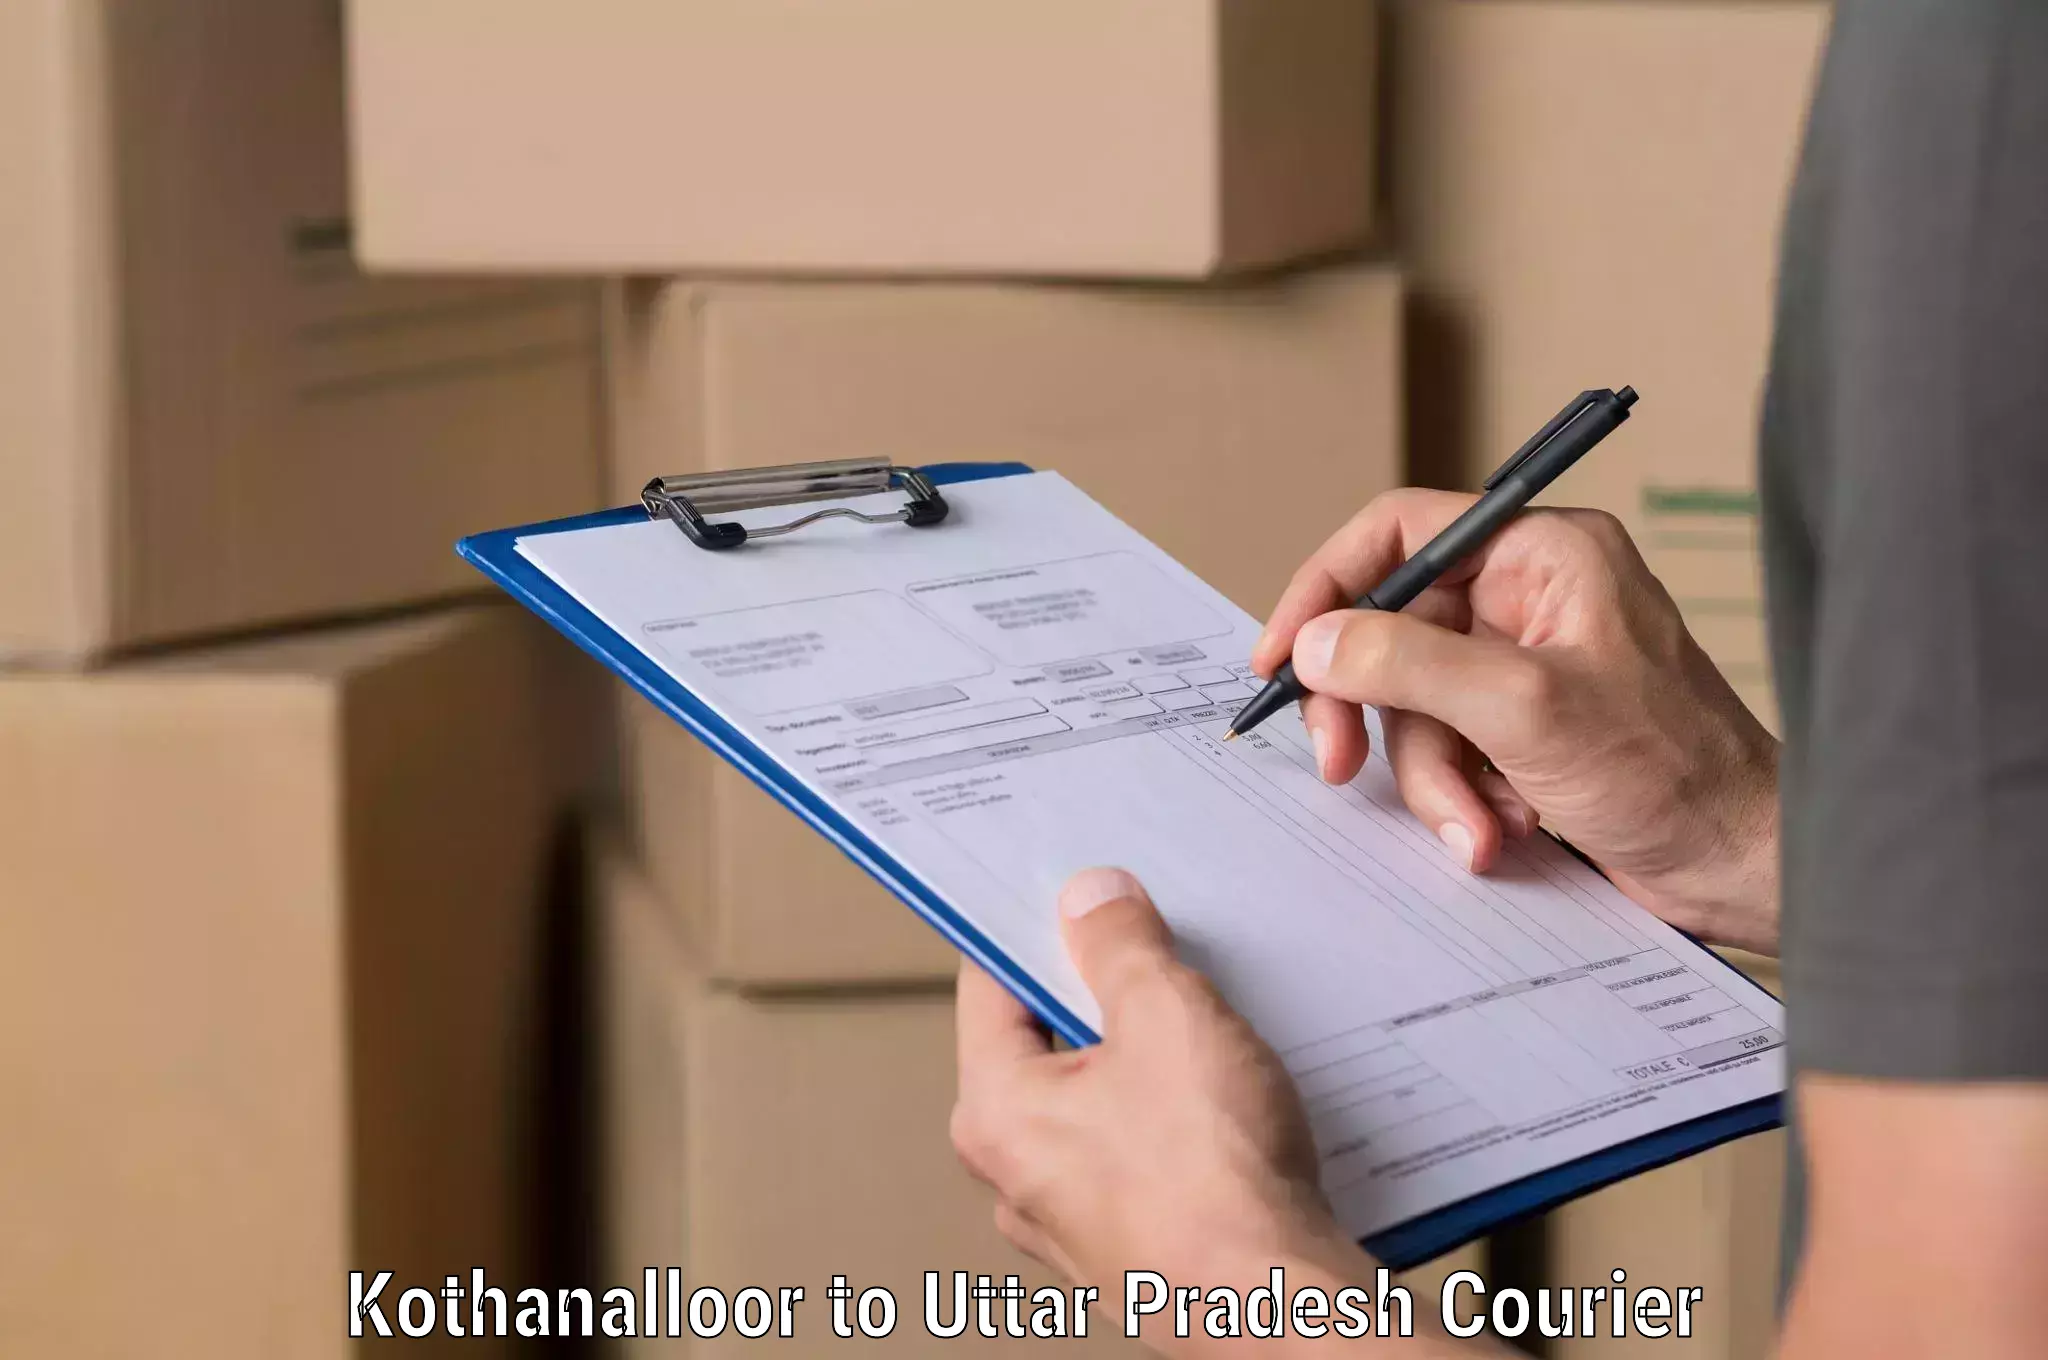 Tech-enabled shipping Kothanalloor to Dadri